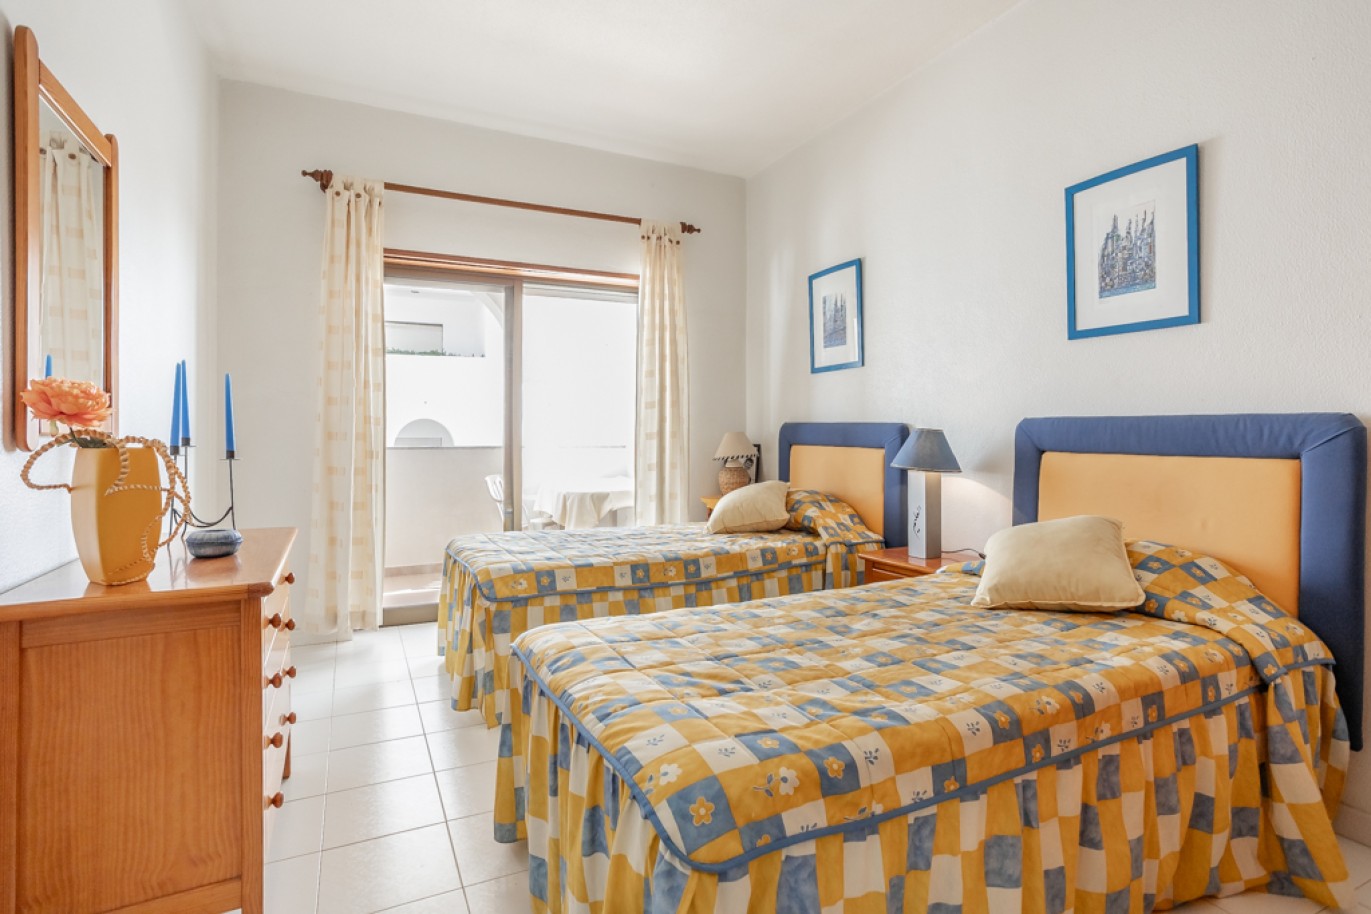 Apartamento com 1+1 quartos, com vista mar, para venda em Porches, Algarve_257032